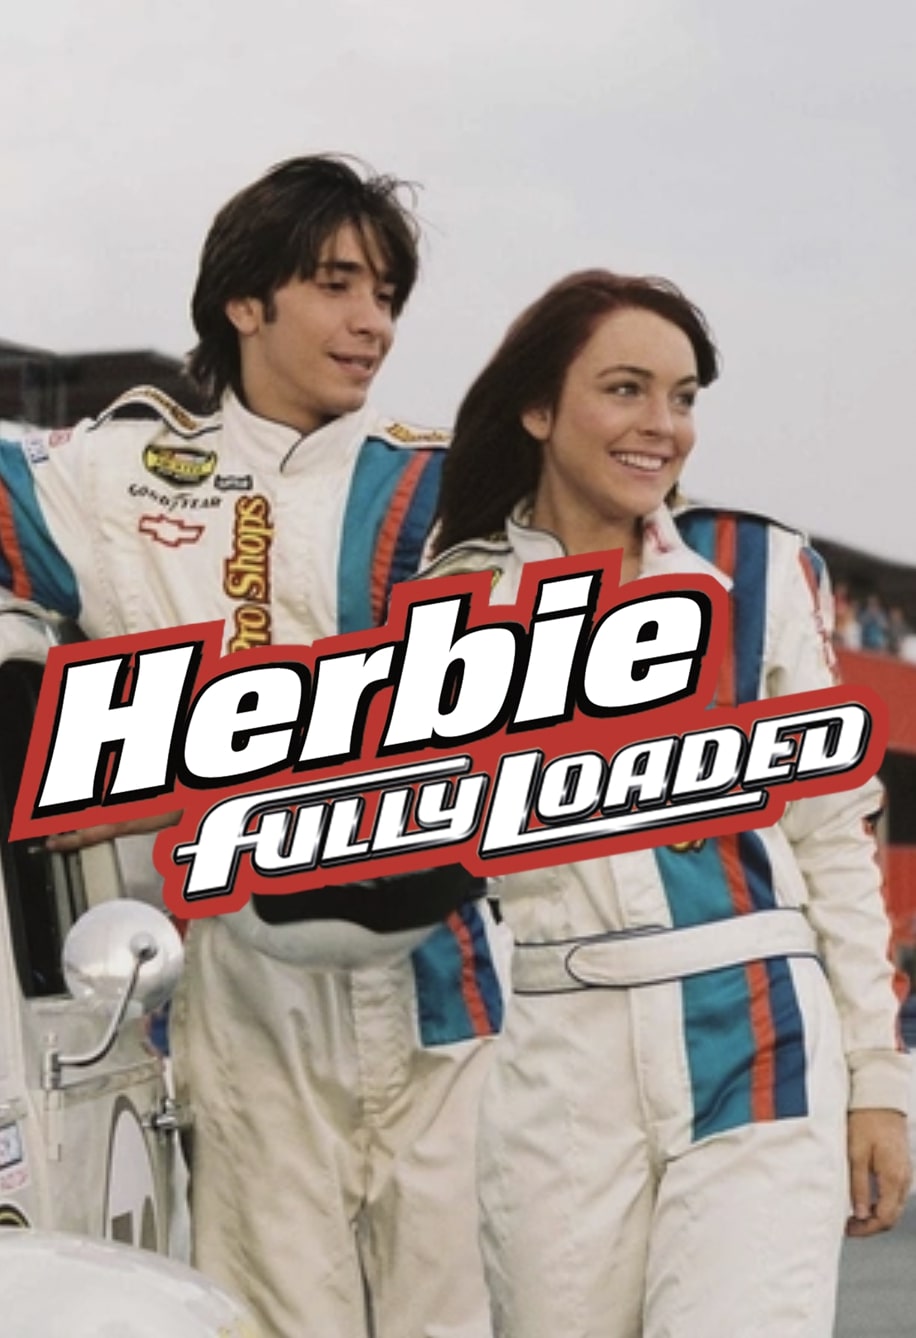 Herbie: Fully loaded (2005) เฮอร์บี้รถมหาสนุก